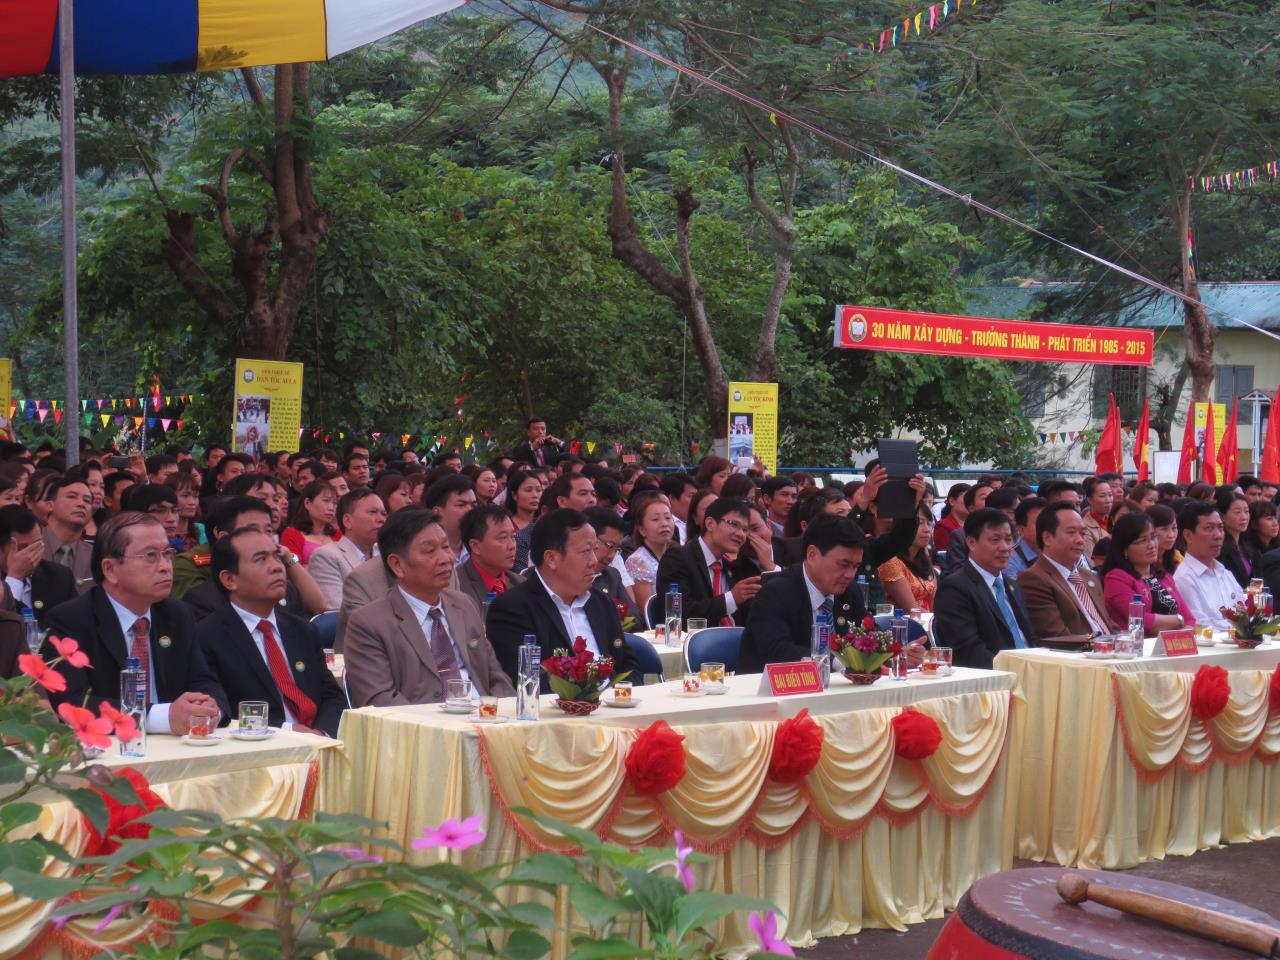 Lễ Mít tinh kỉ niệm 30 năm thành lập trường (1985-2015)